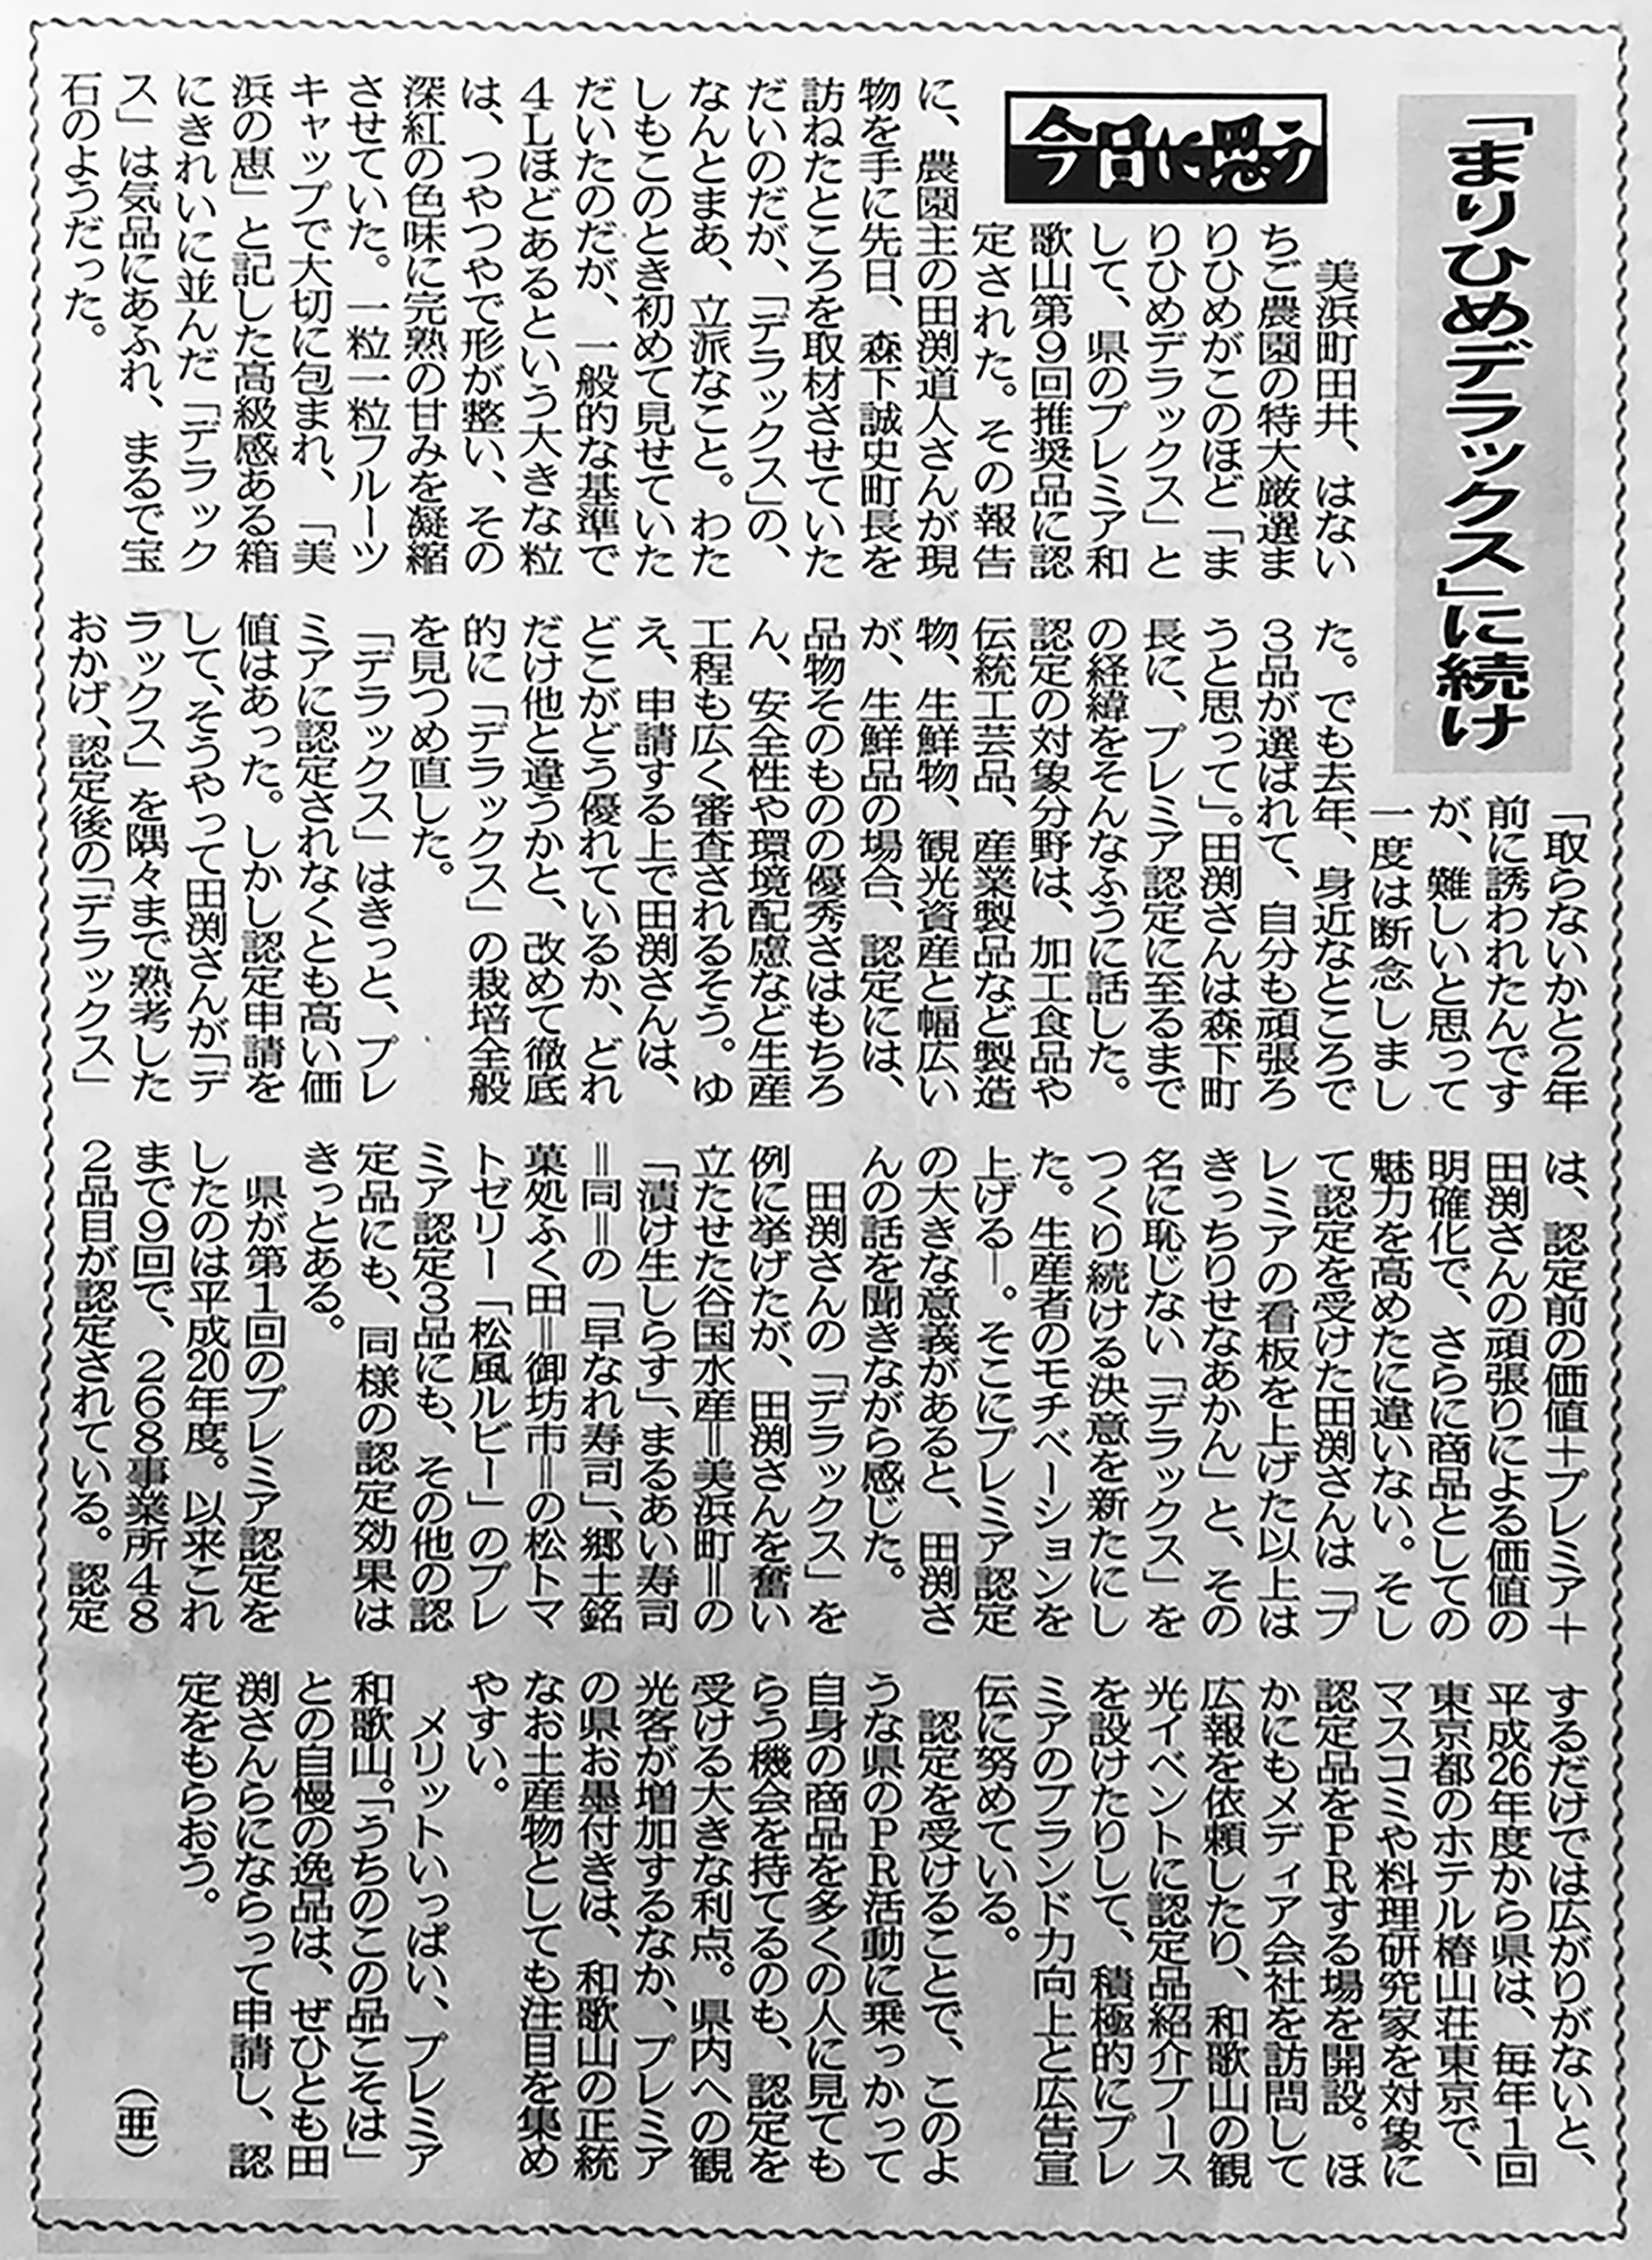 【2017年4月28日】日高新報・紀州新聞で当園が紹介されました。